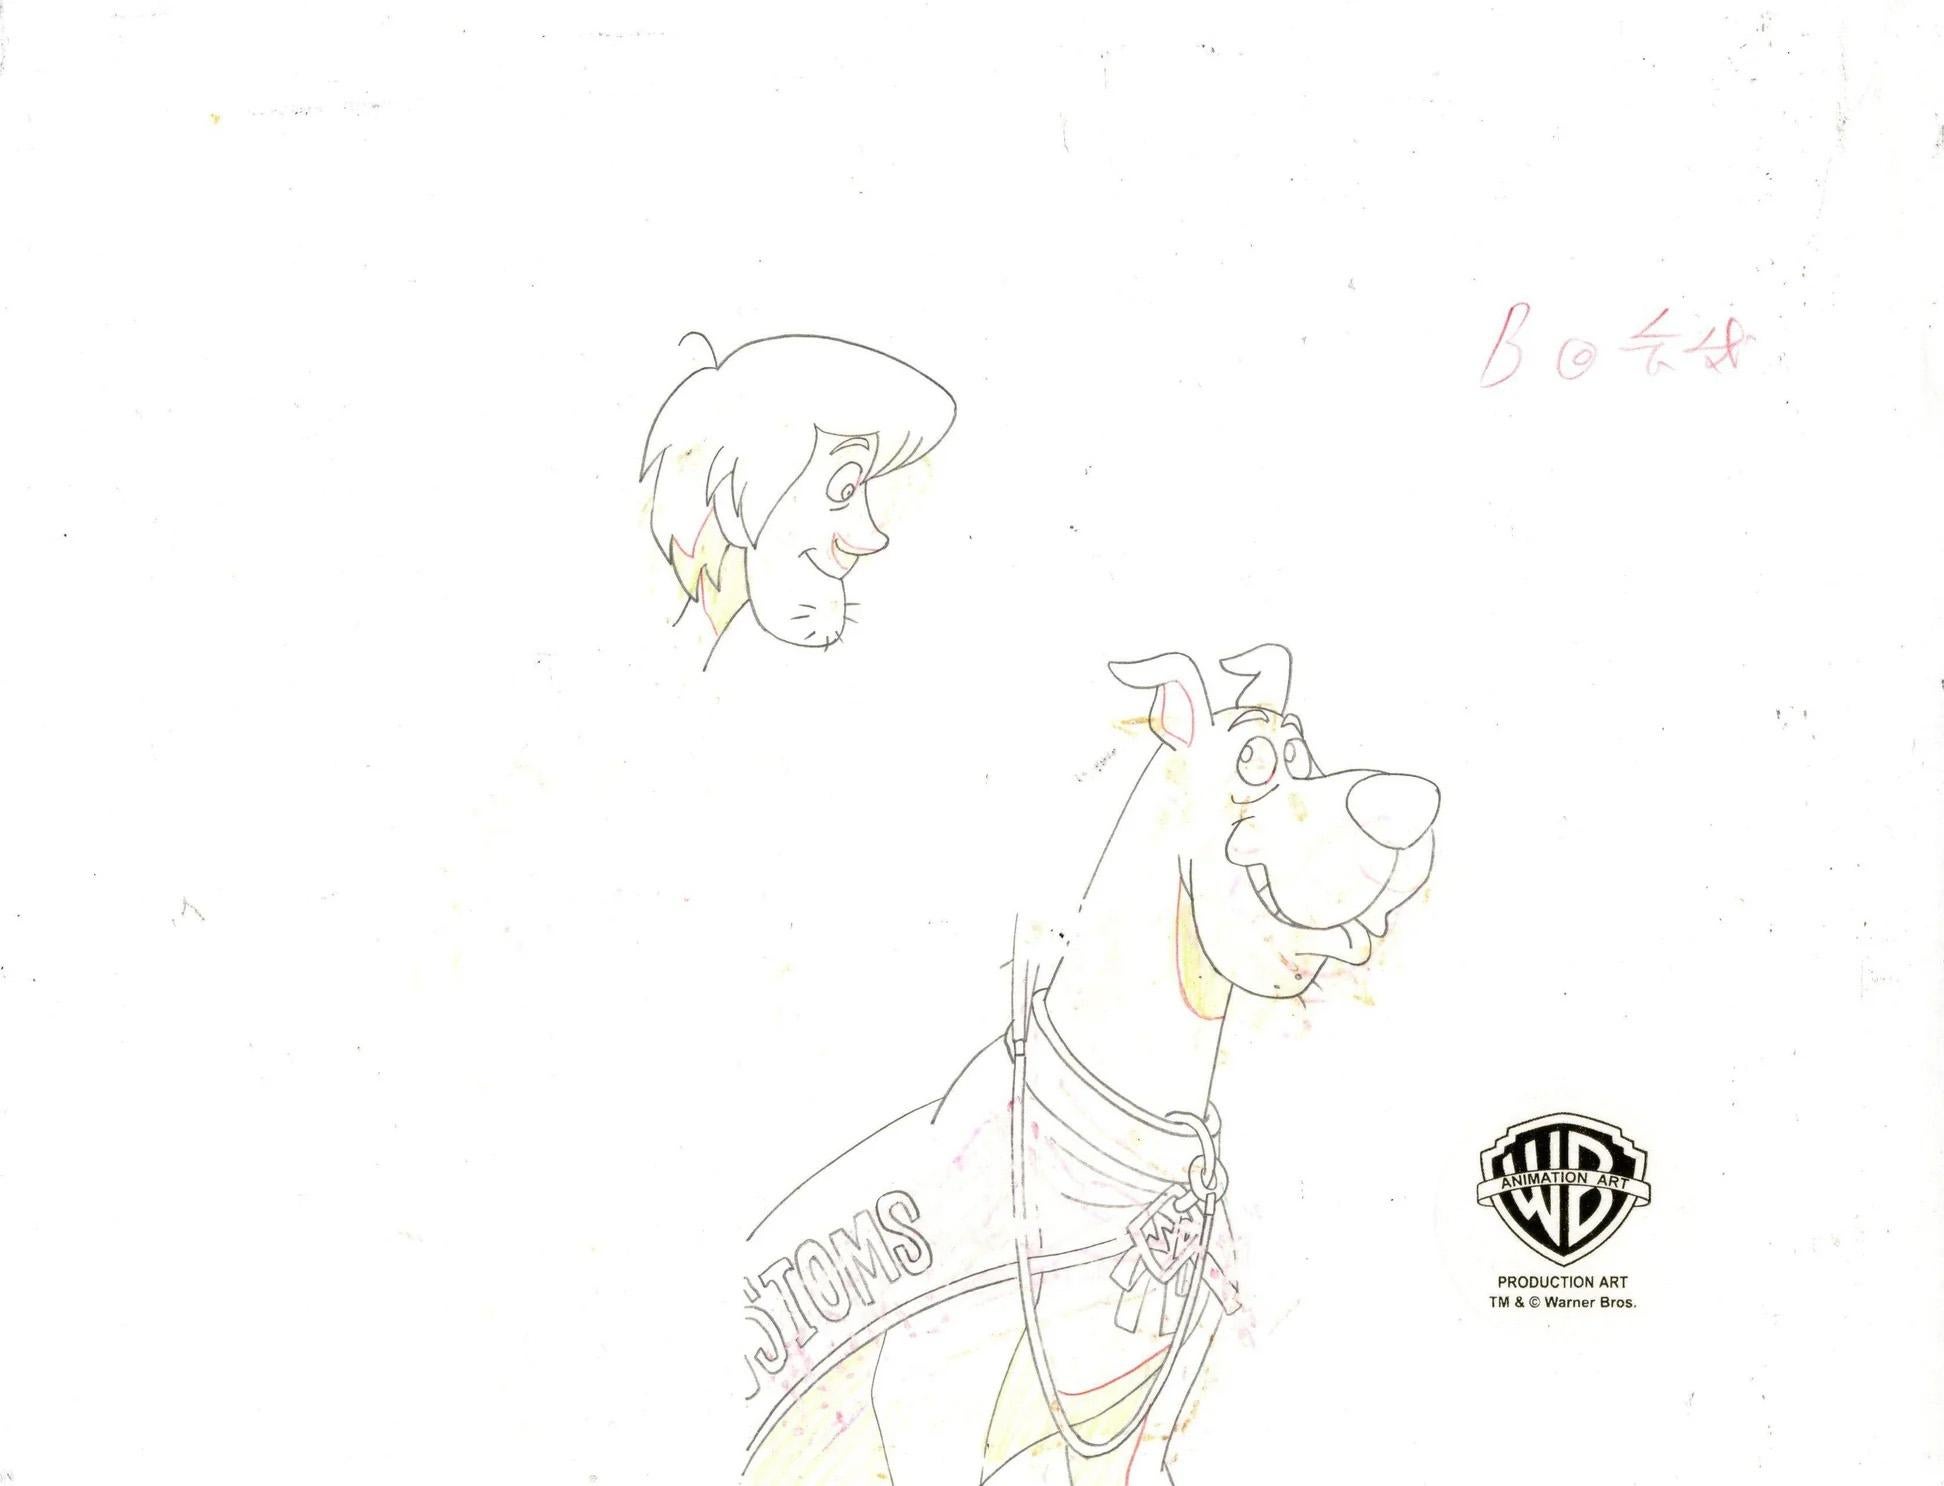 Cel/arrière-plan d'origine Scooby-Doo, dessin : Scooby, Shaggy signé par Bob Singer - Pop Art Art par Warner Bros. Studio Artists